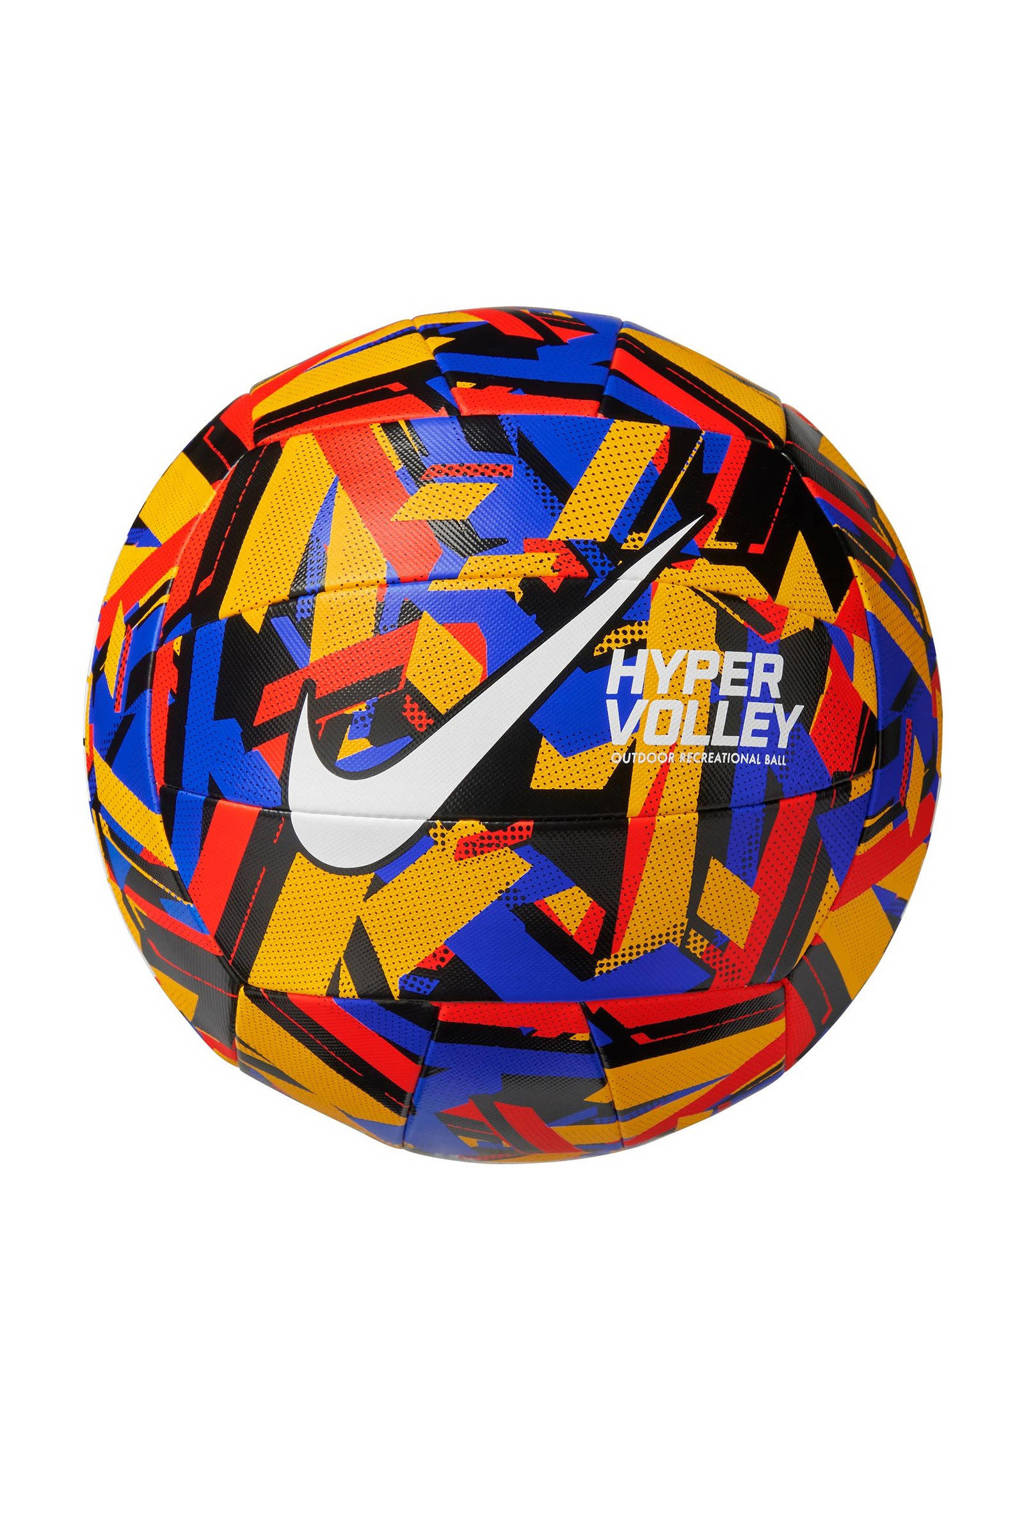 Nike volleybal zwart/multi, multi/zwart/geel/rood/blauw